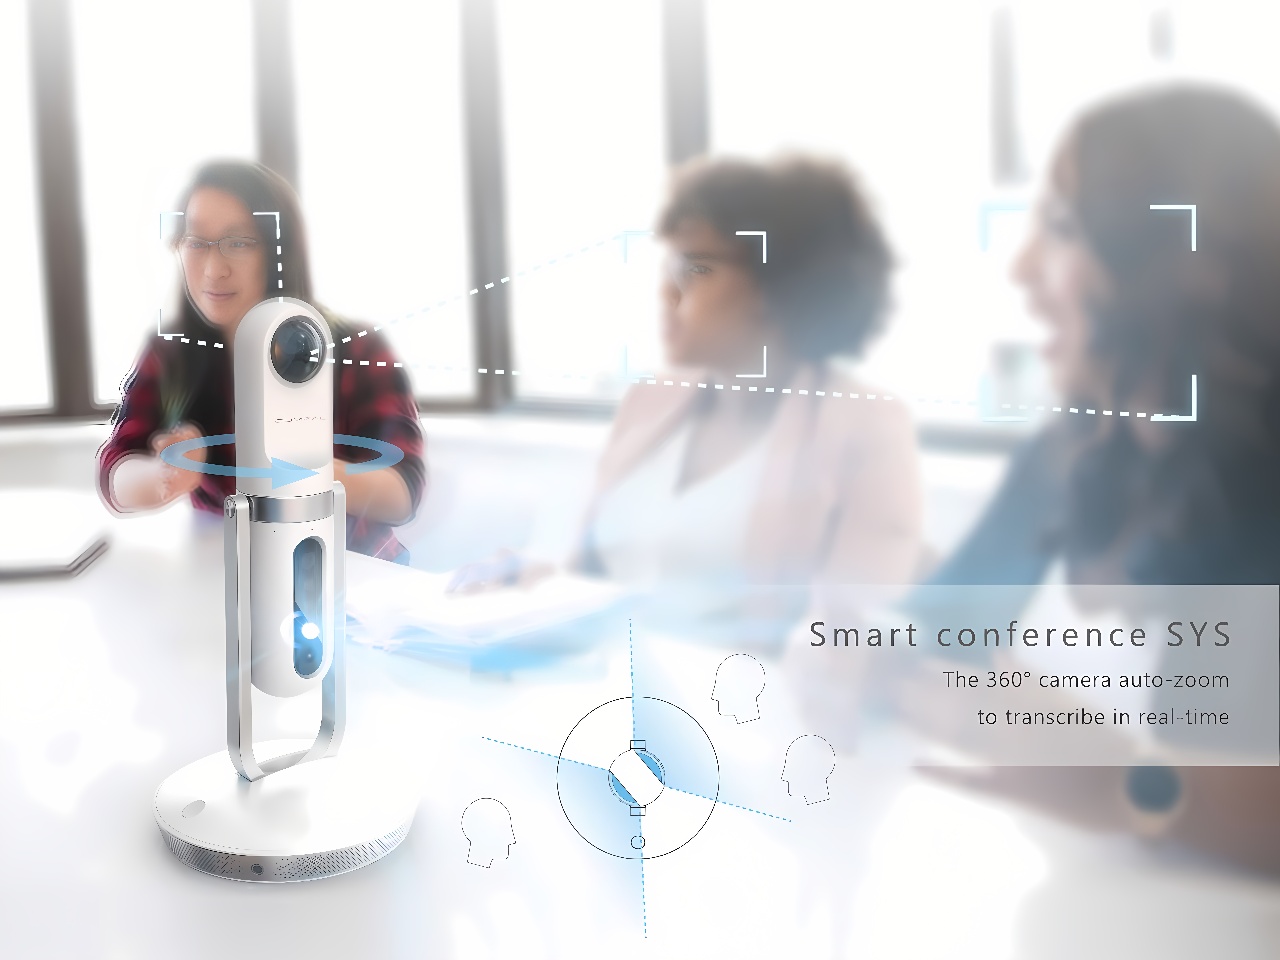 图片展示了一场商务会议，桌上有一个360度摄像头，周围坐着几位正交谈的女性。